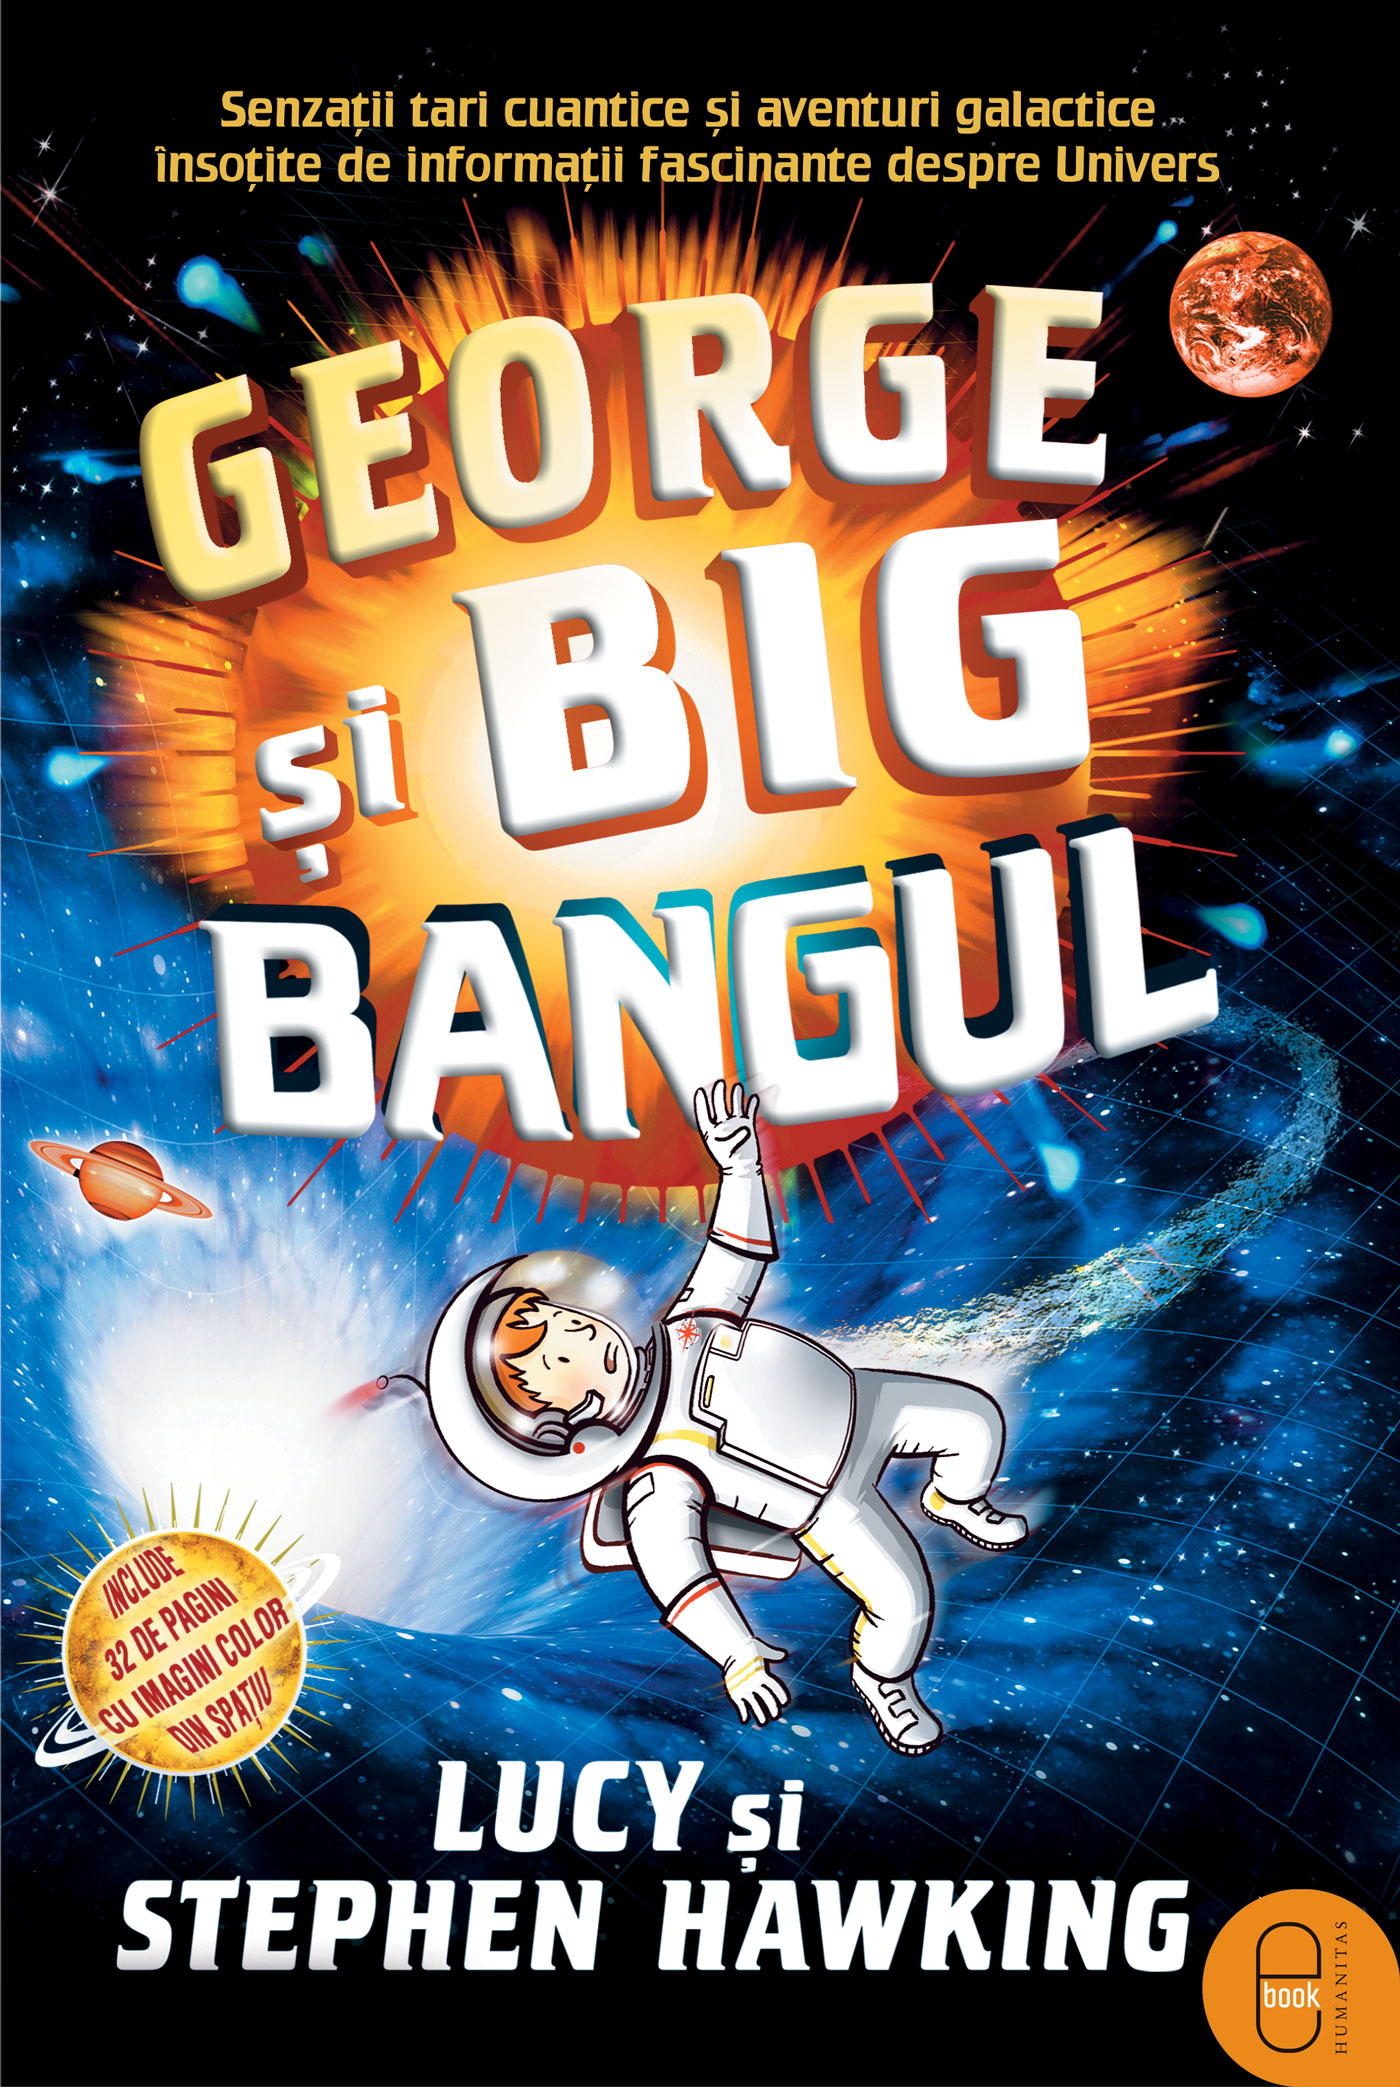 George si Big Bangul (ebook)